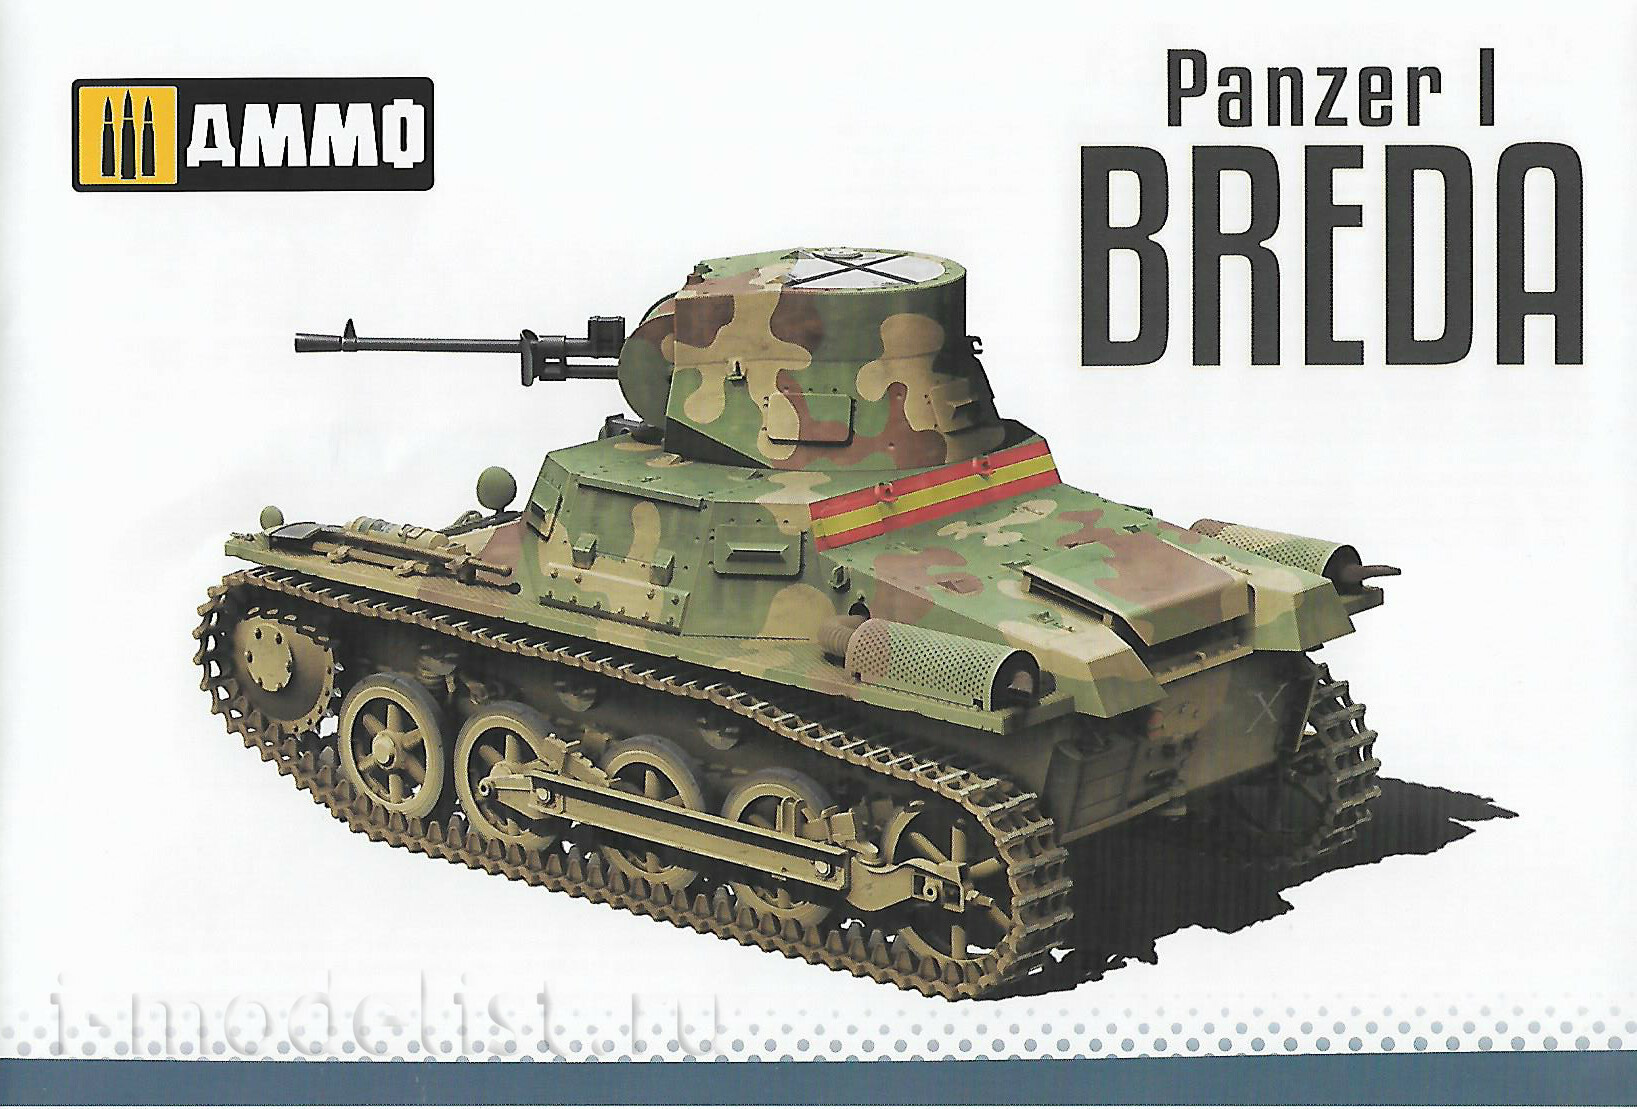 AMIG8506 Ammo Mig 1/35 Танк Panzer I Breda, Гражданская война в Испании 1936 - 1939